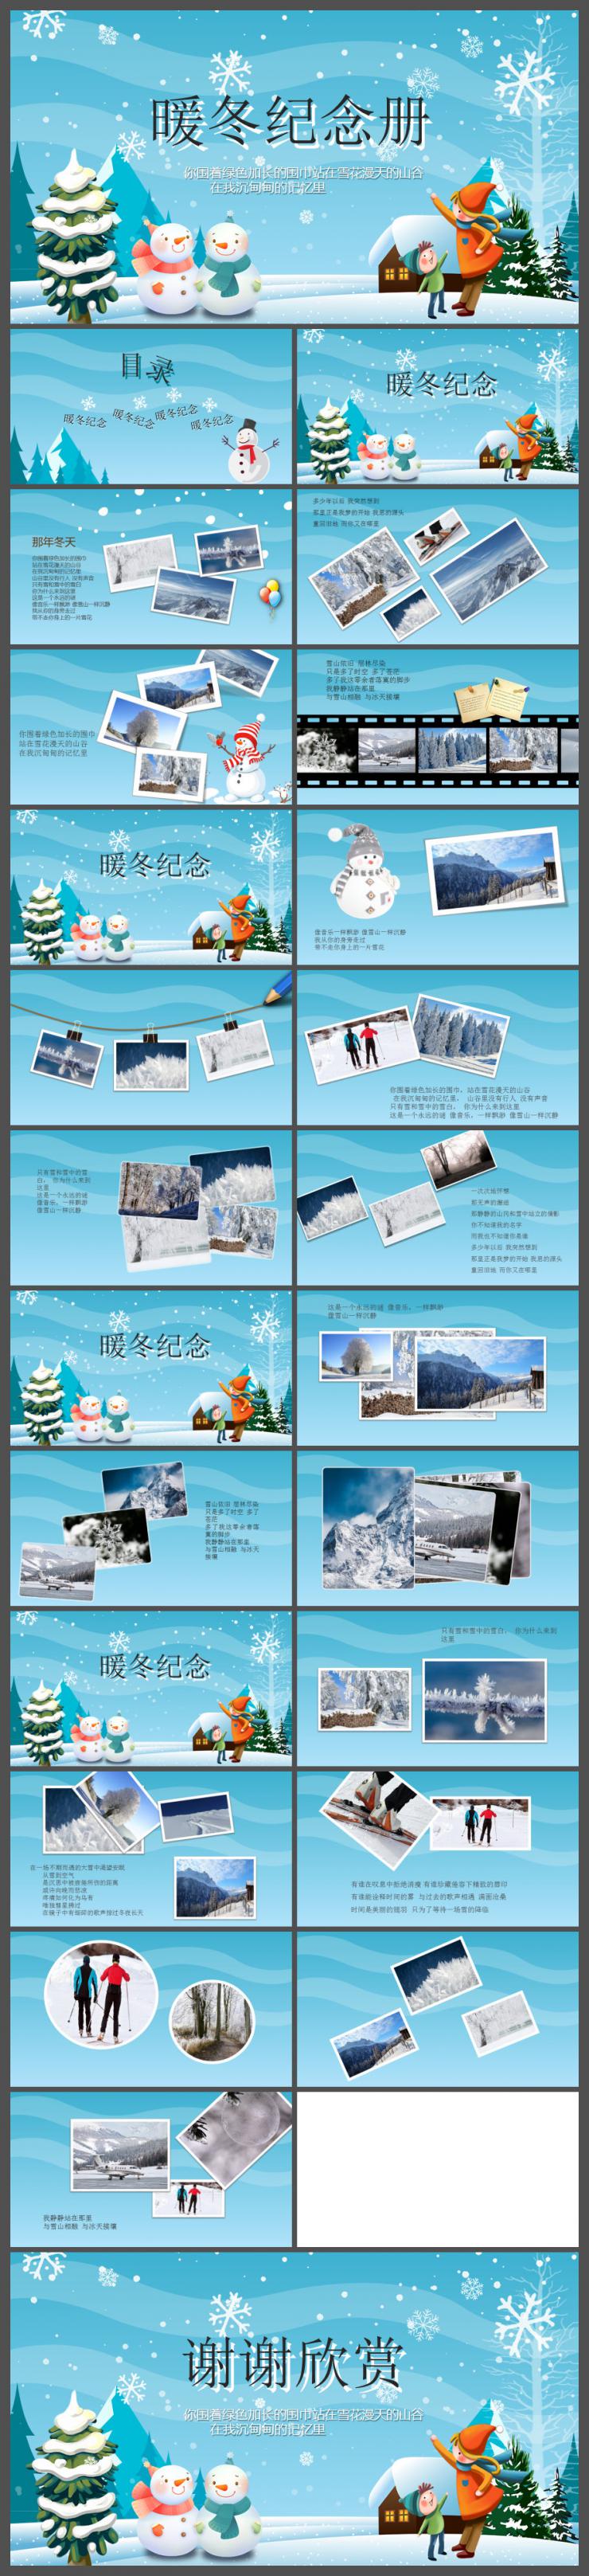 藍色卡通暖冬旅游紀念相冊PPT模板